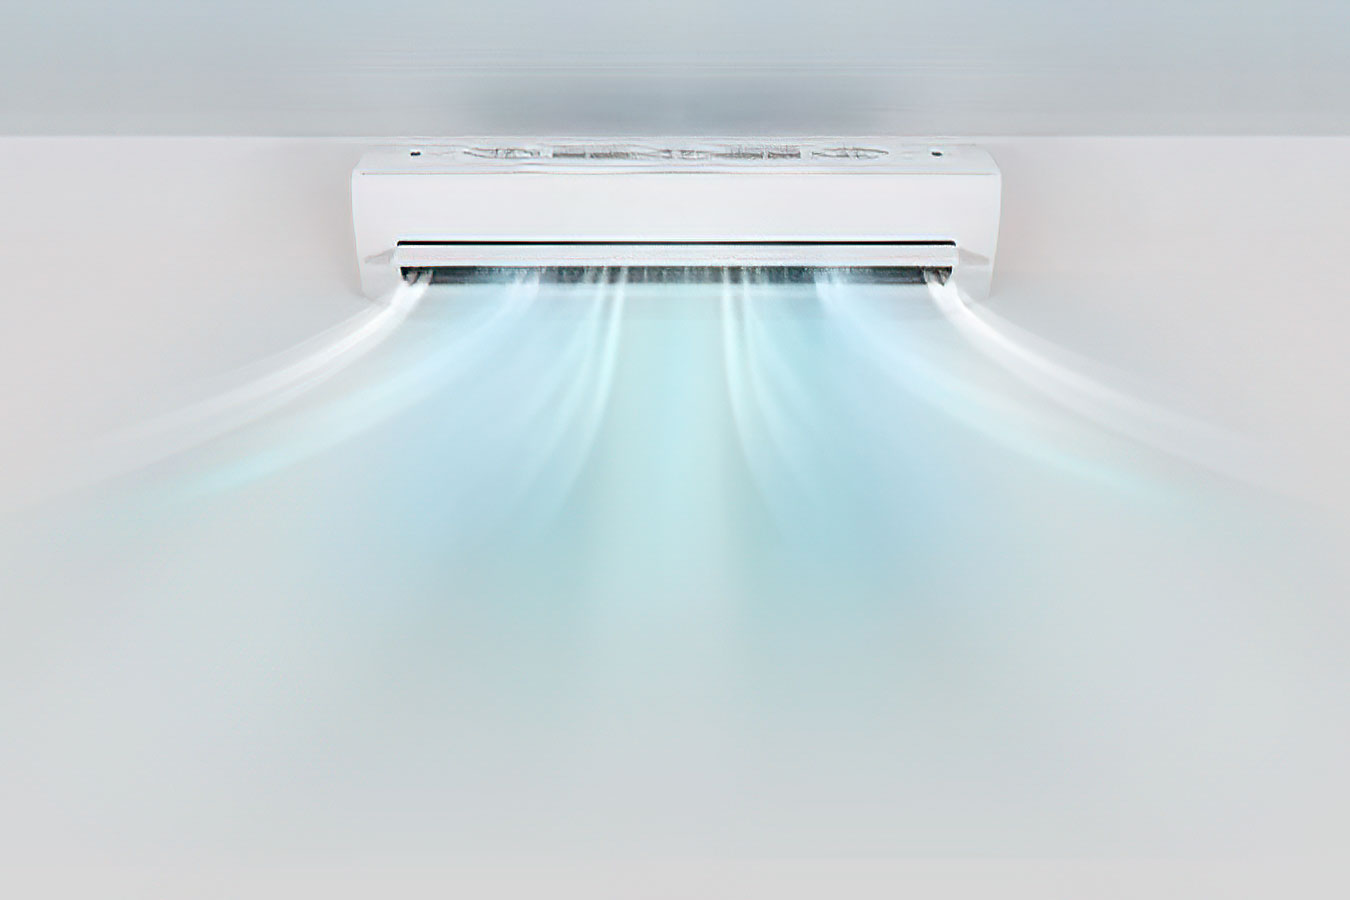 https://www.pmidraulica.it/wp/wp-content/uploads/2021/06/pm-idraulica-manutenzione-climatizzatori3.jpg